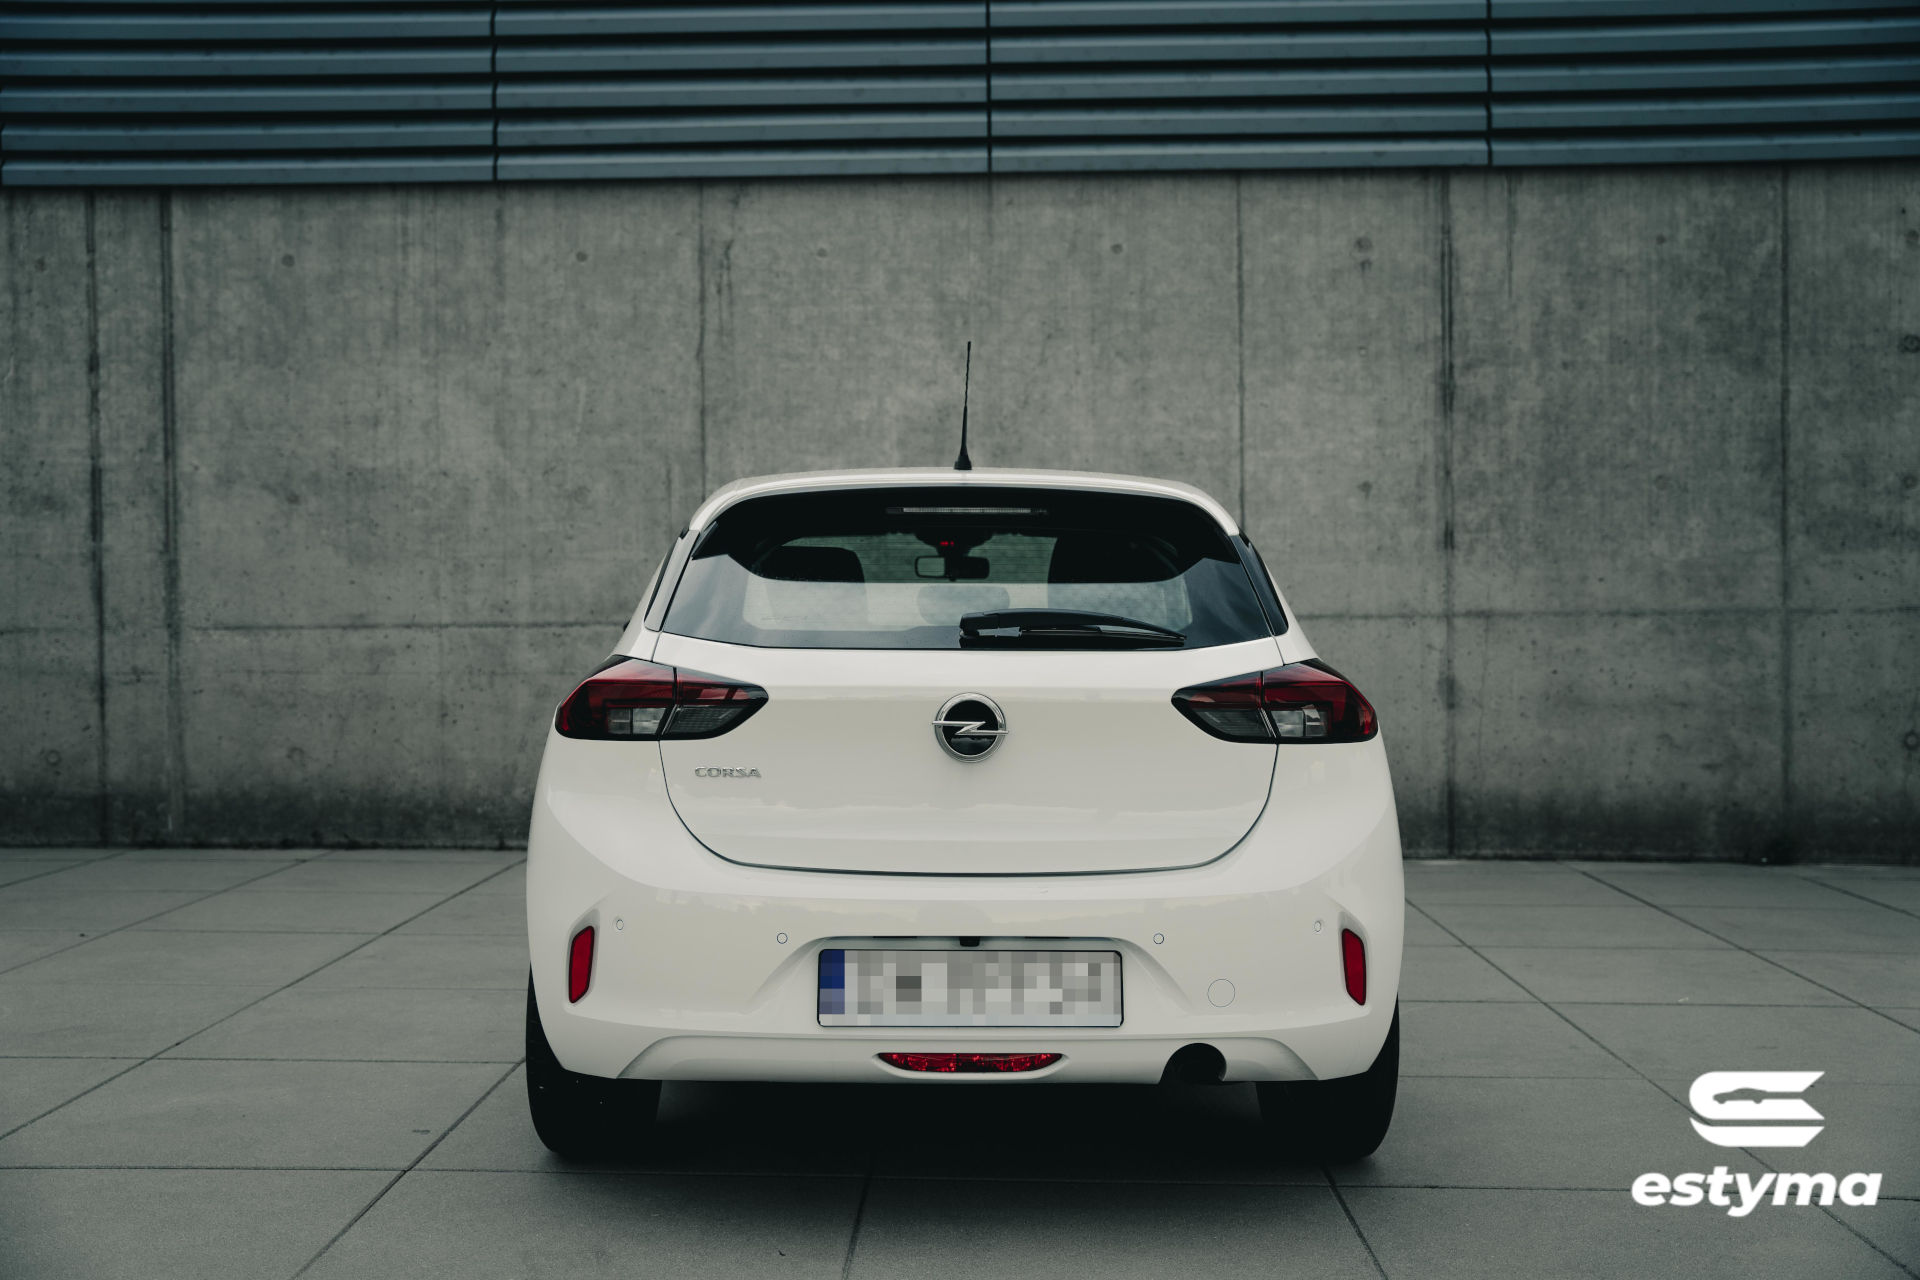 Opel Corsa F, tył. Dostępna na wynajem w wypożyczalni samochodów.